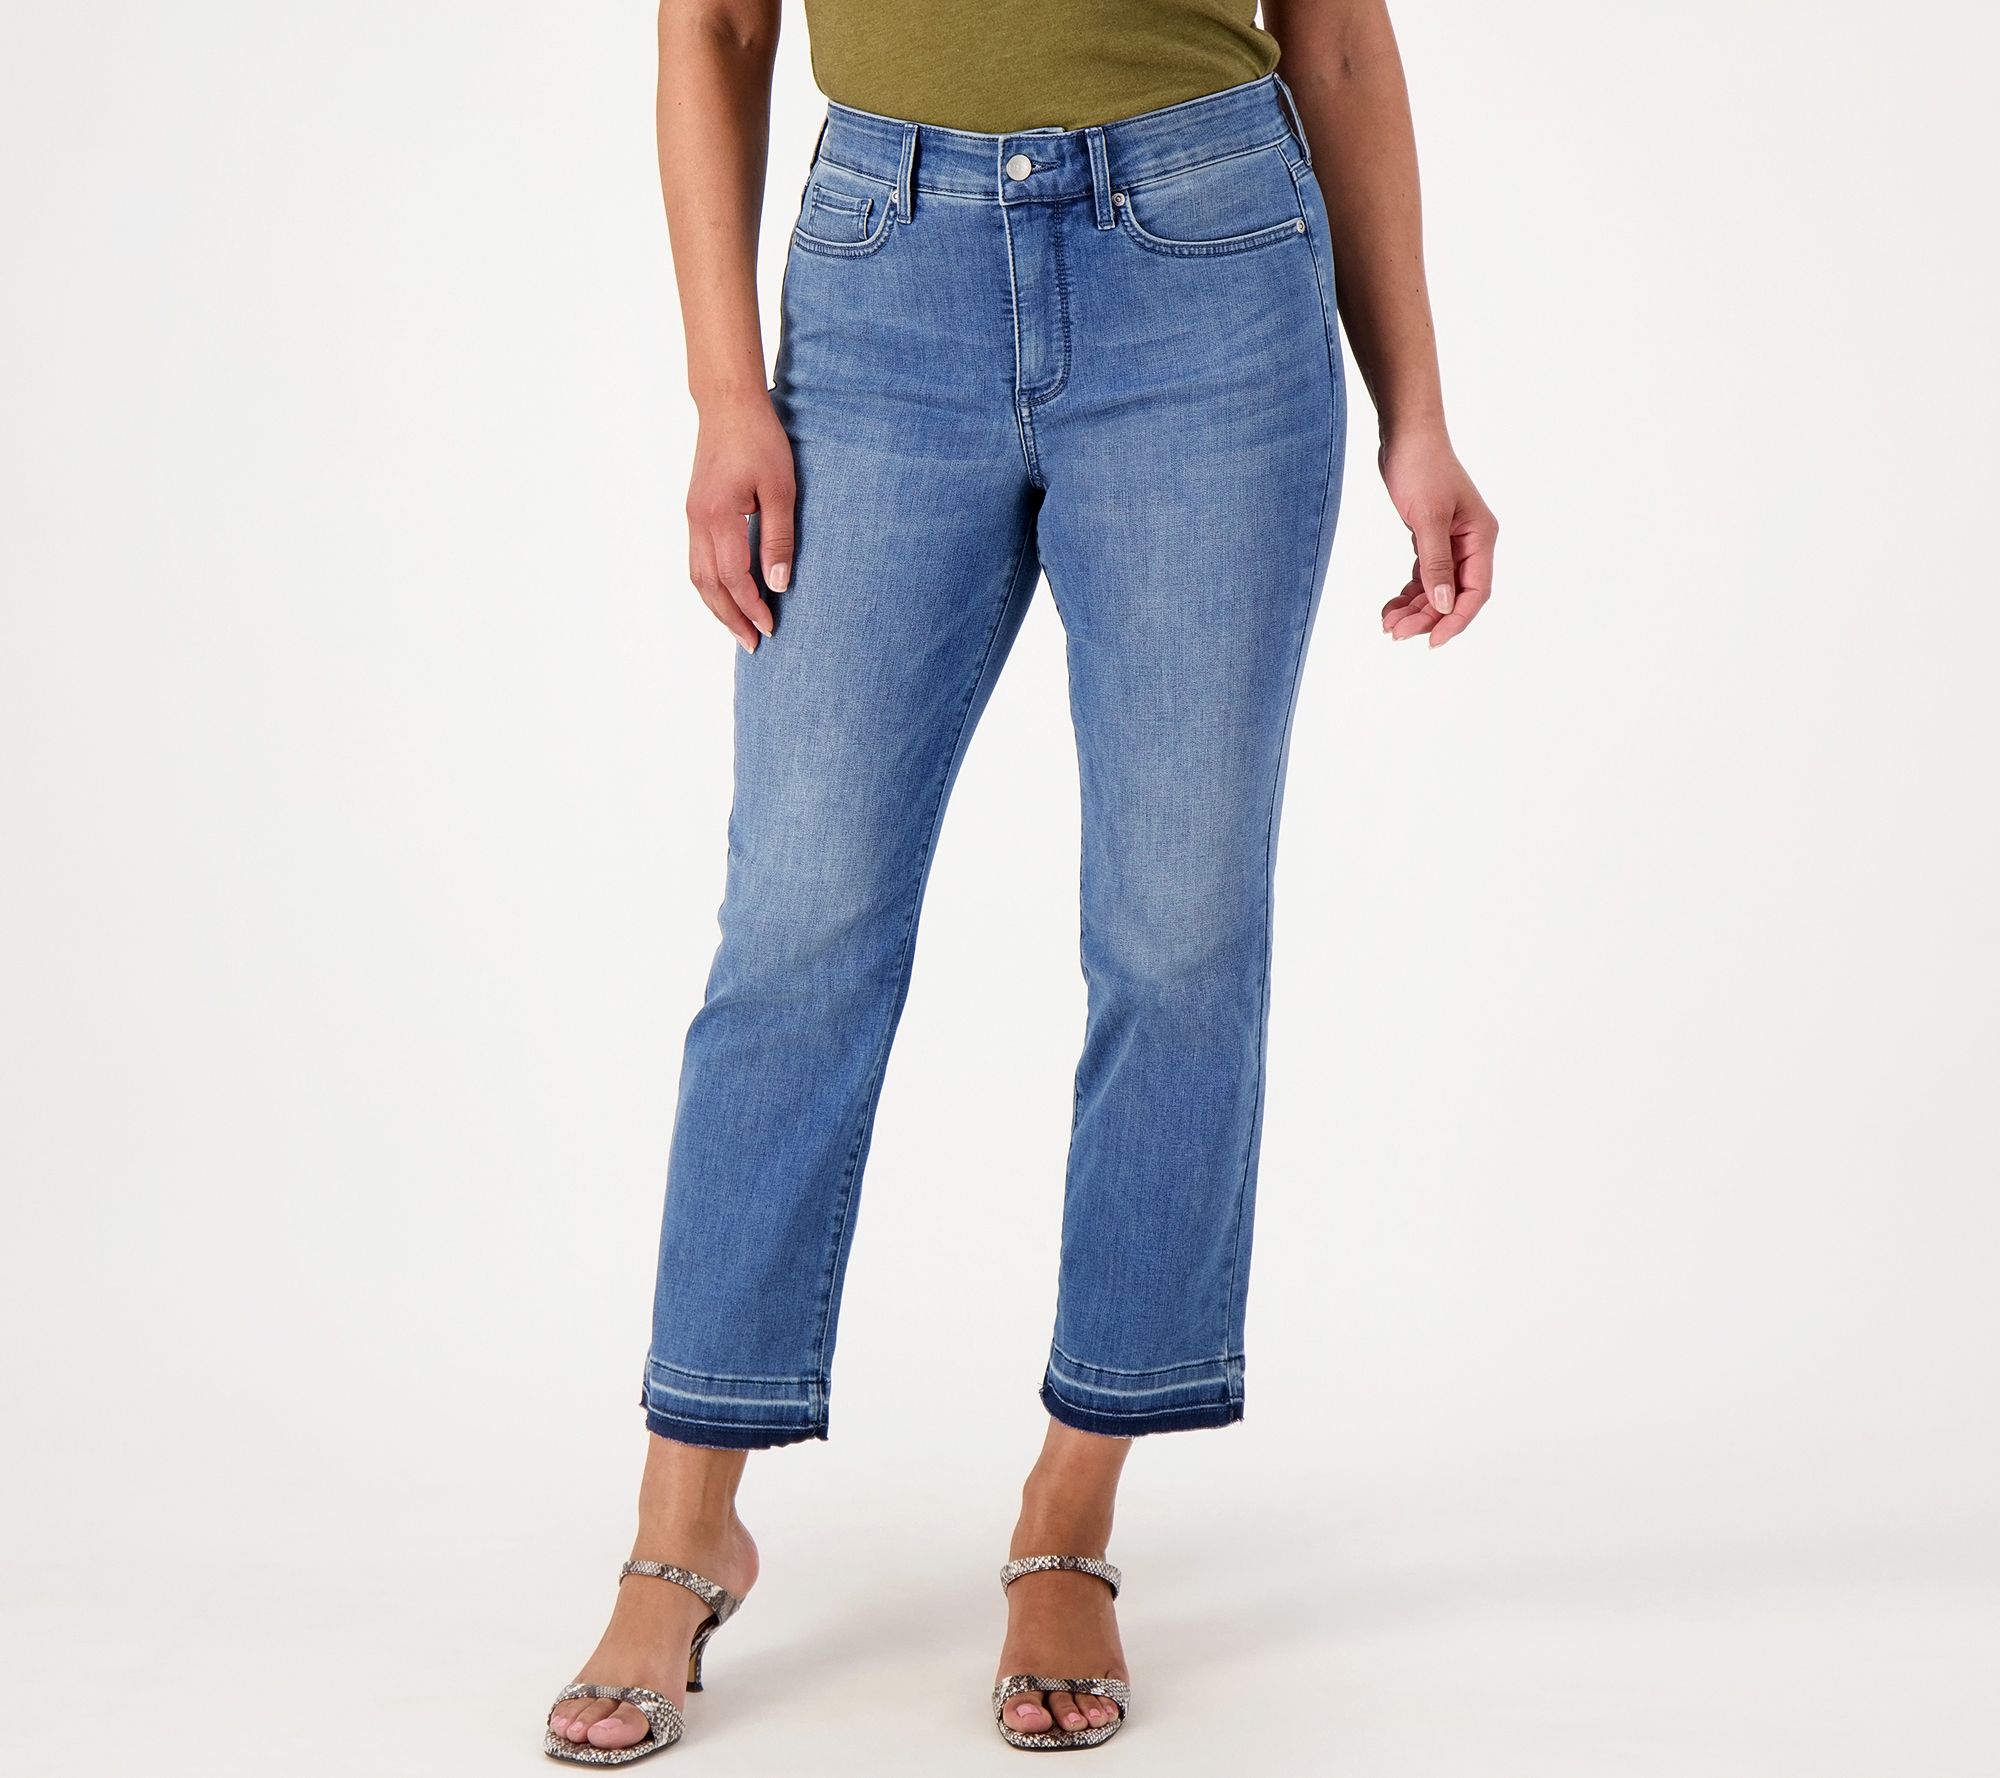 NWT J BRANDMaria high-rise skinny leg jeans size 25